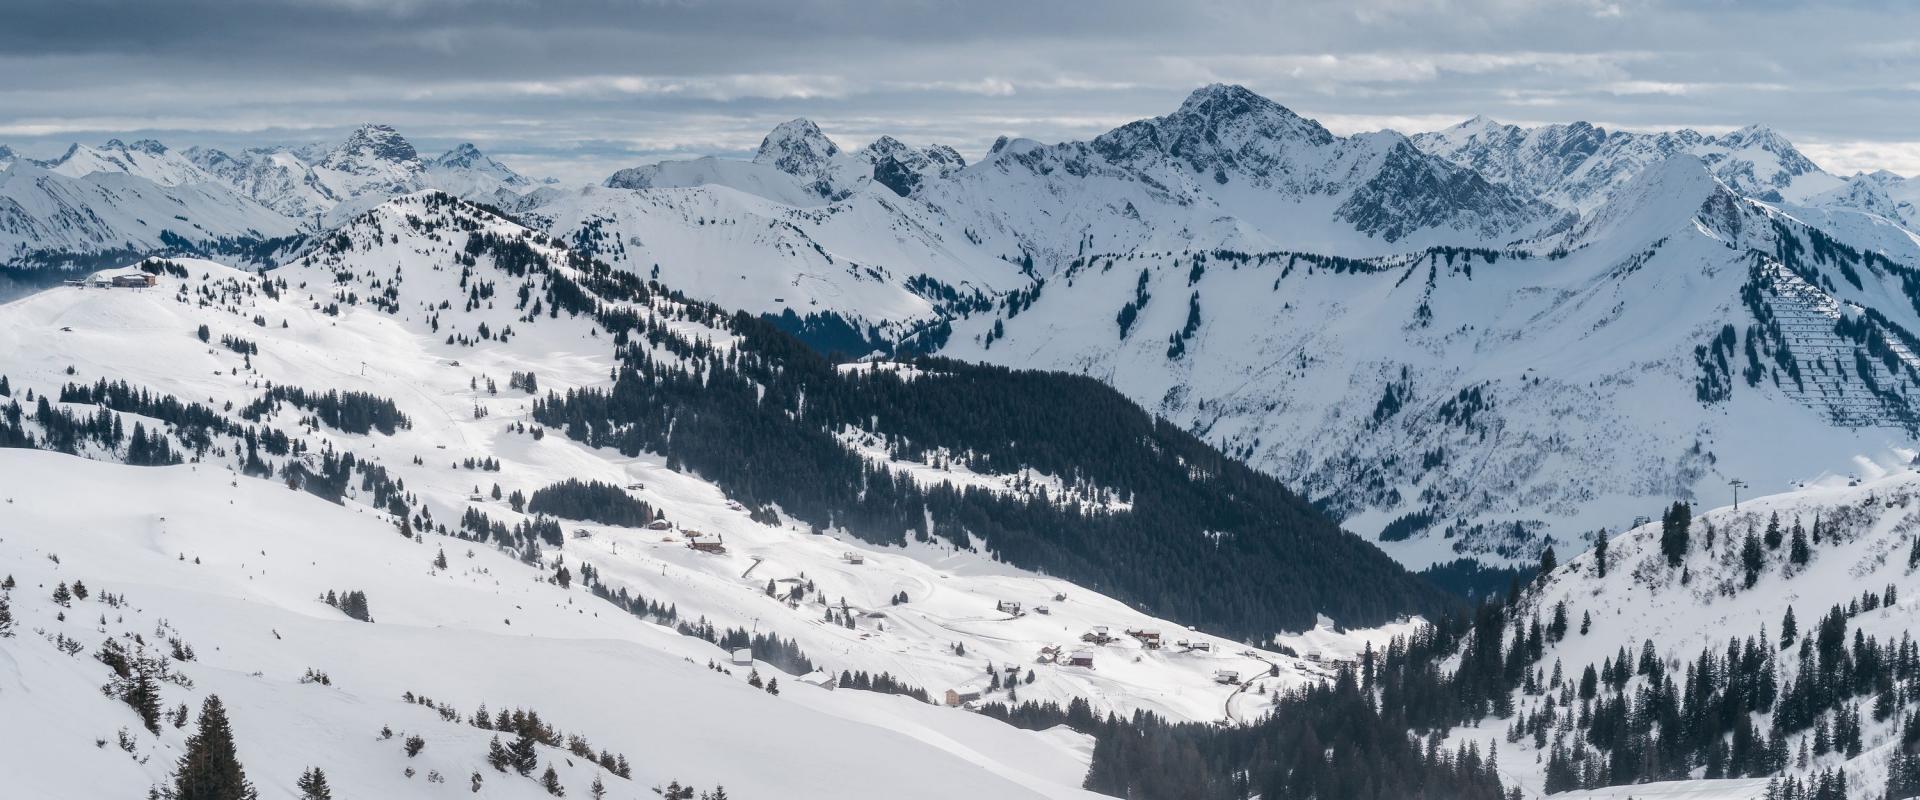 Skigebiet Damüls Mellau mit Weitblick auf die Berge